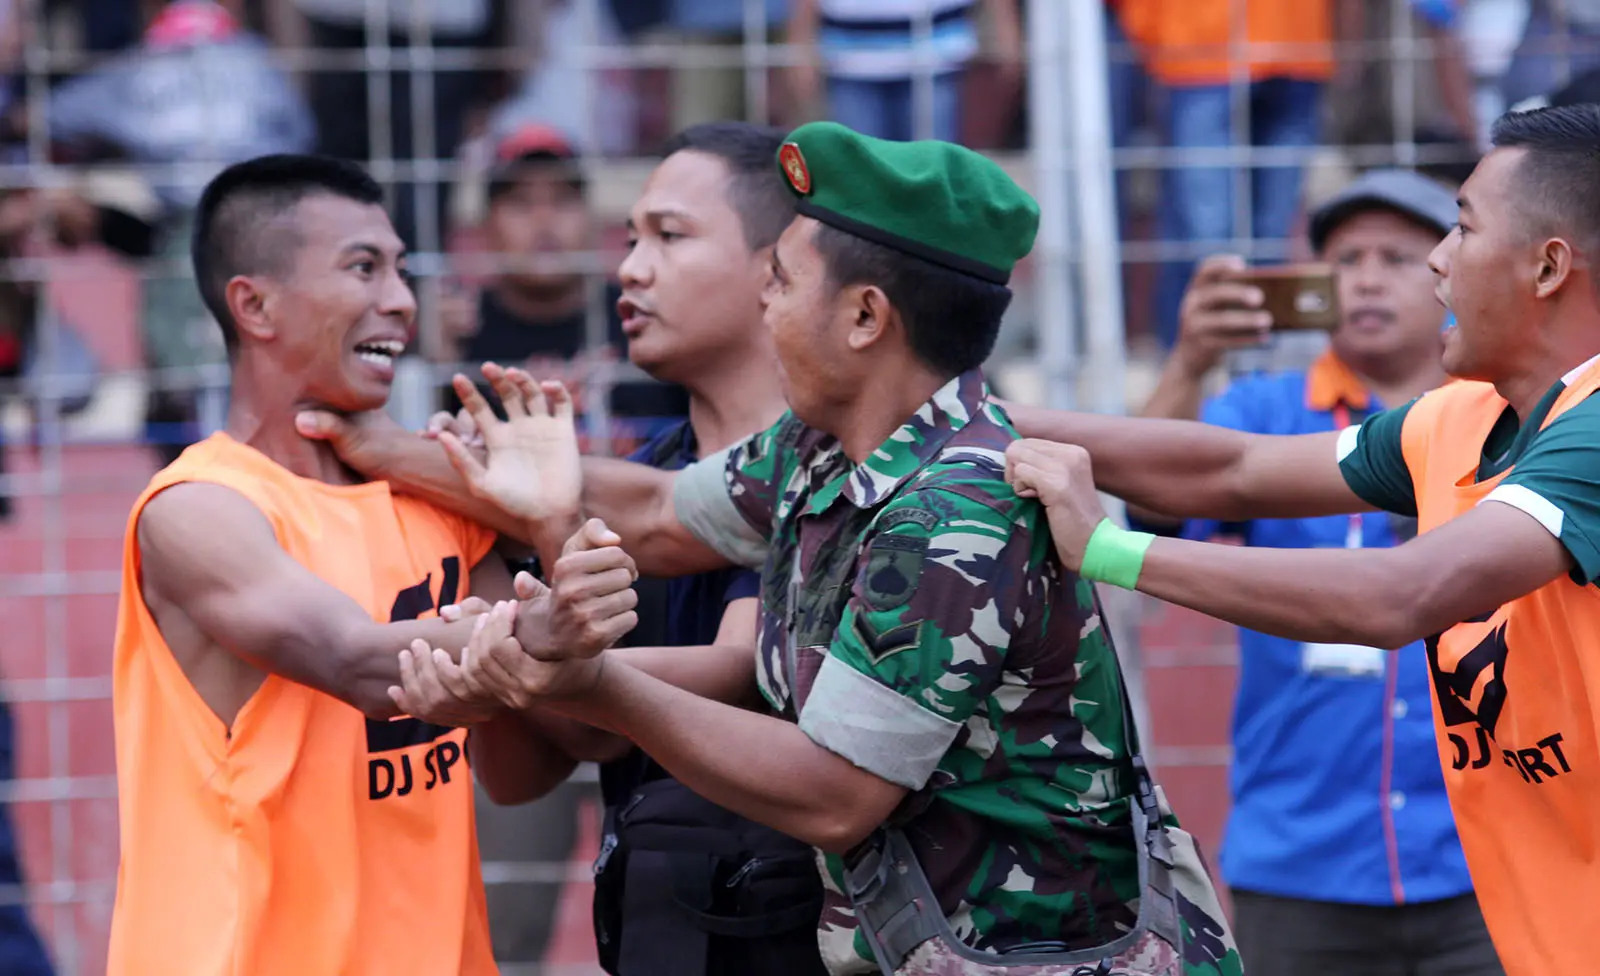 Duel Persibat vs PSMS di Stadion M. Sarengat, Batang, Jumat (29/9/2017), berujung keributan. (Bola.com/Robby Firly)